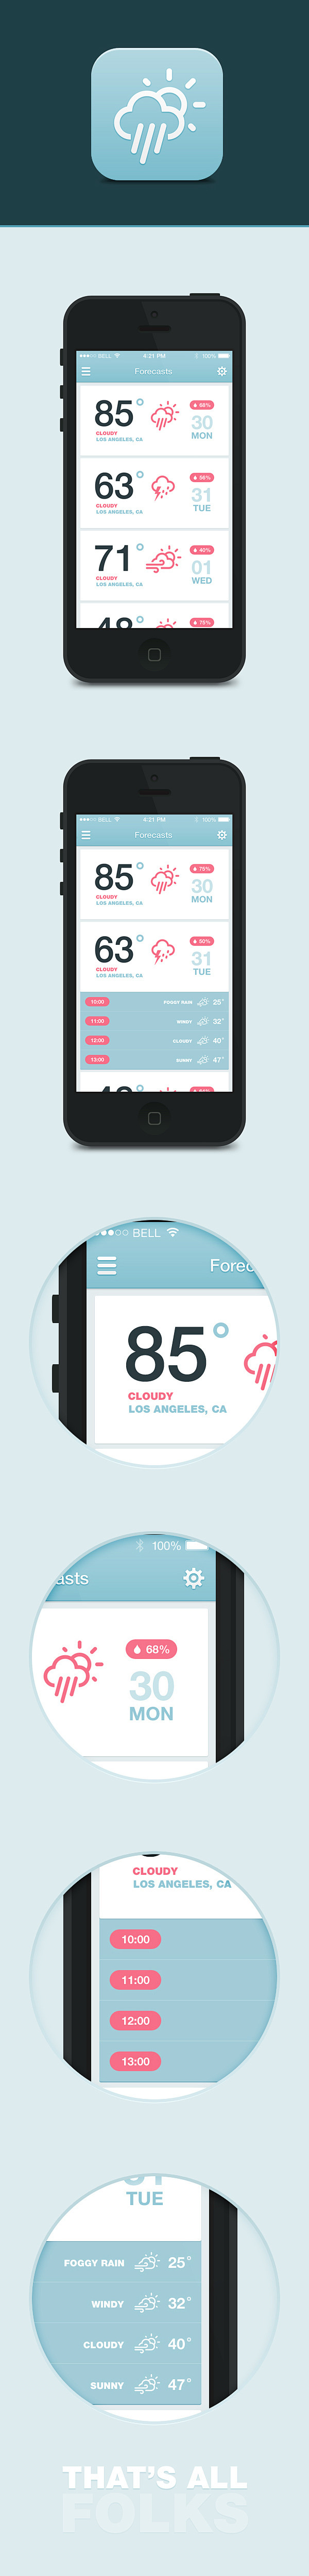 iOS7 Weather App on ...